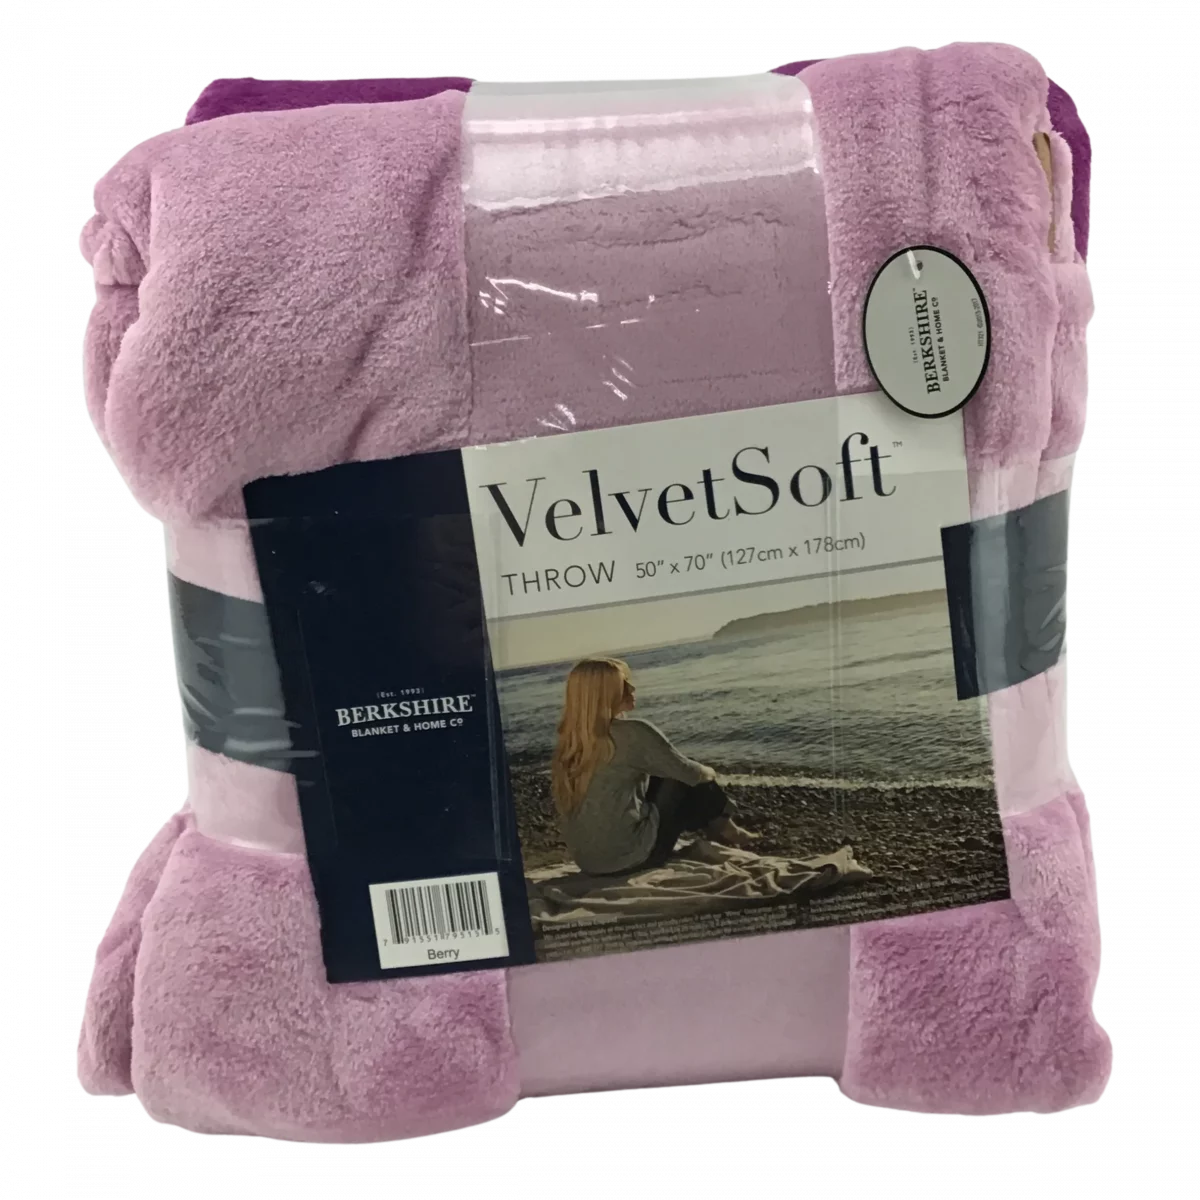 Berkshire: Velvet Soft Throw Blanket / 3 pack / Throw Blanket Set / Purple